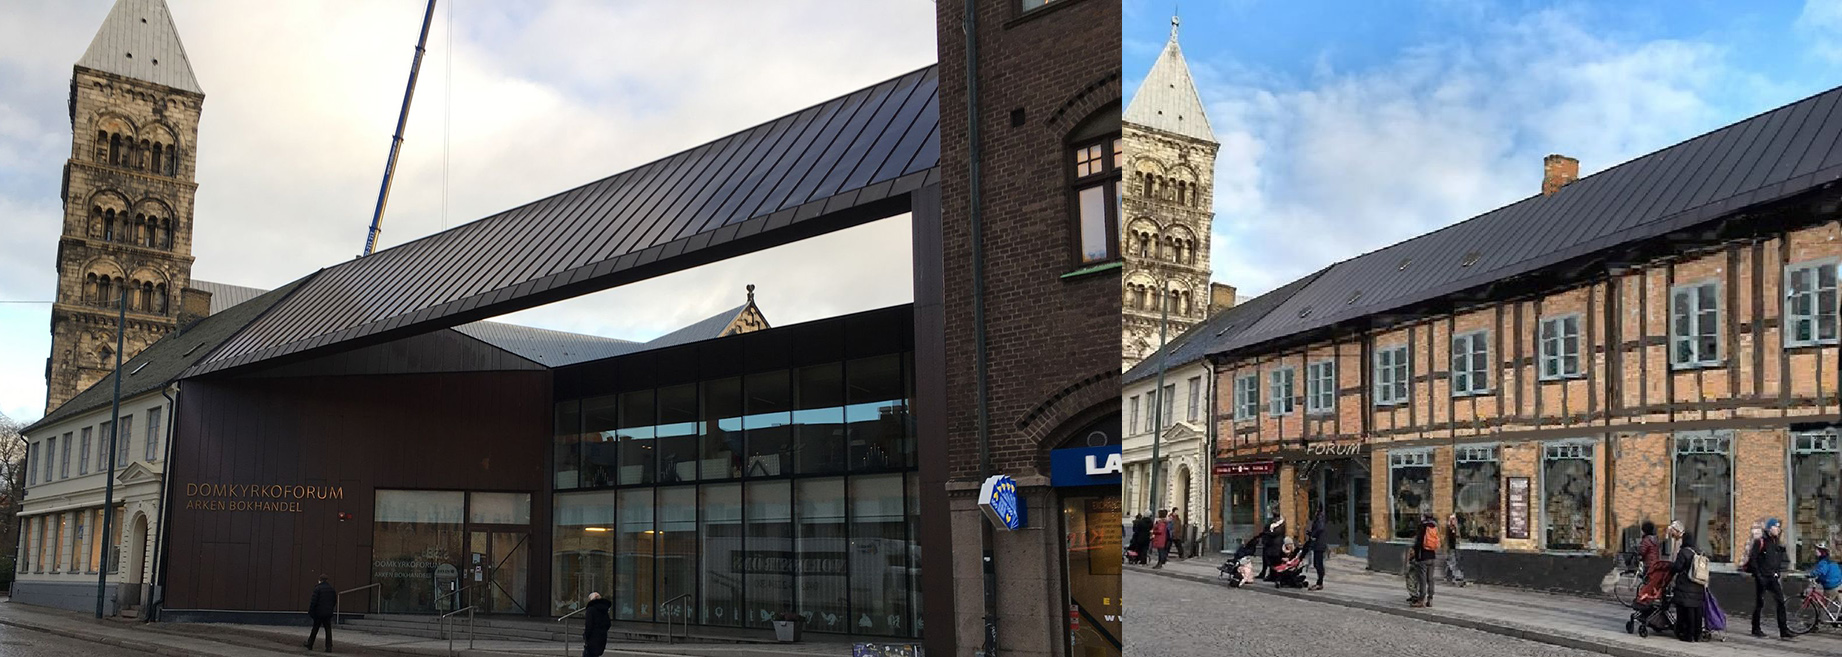 Den klassiske arkitekten Bengt Hellborg har börjat skissa på ett förslag på hur Domkyrkoforums fula fasader kan byggas om och gömmas bakom arkitektur som harmoniserar med Lunds historiska stadskärna.